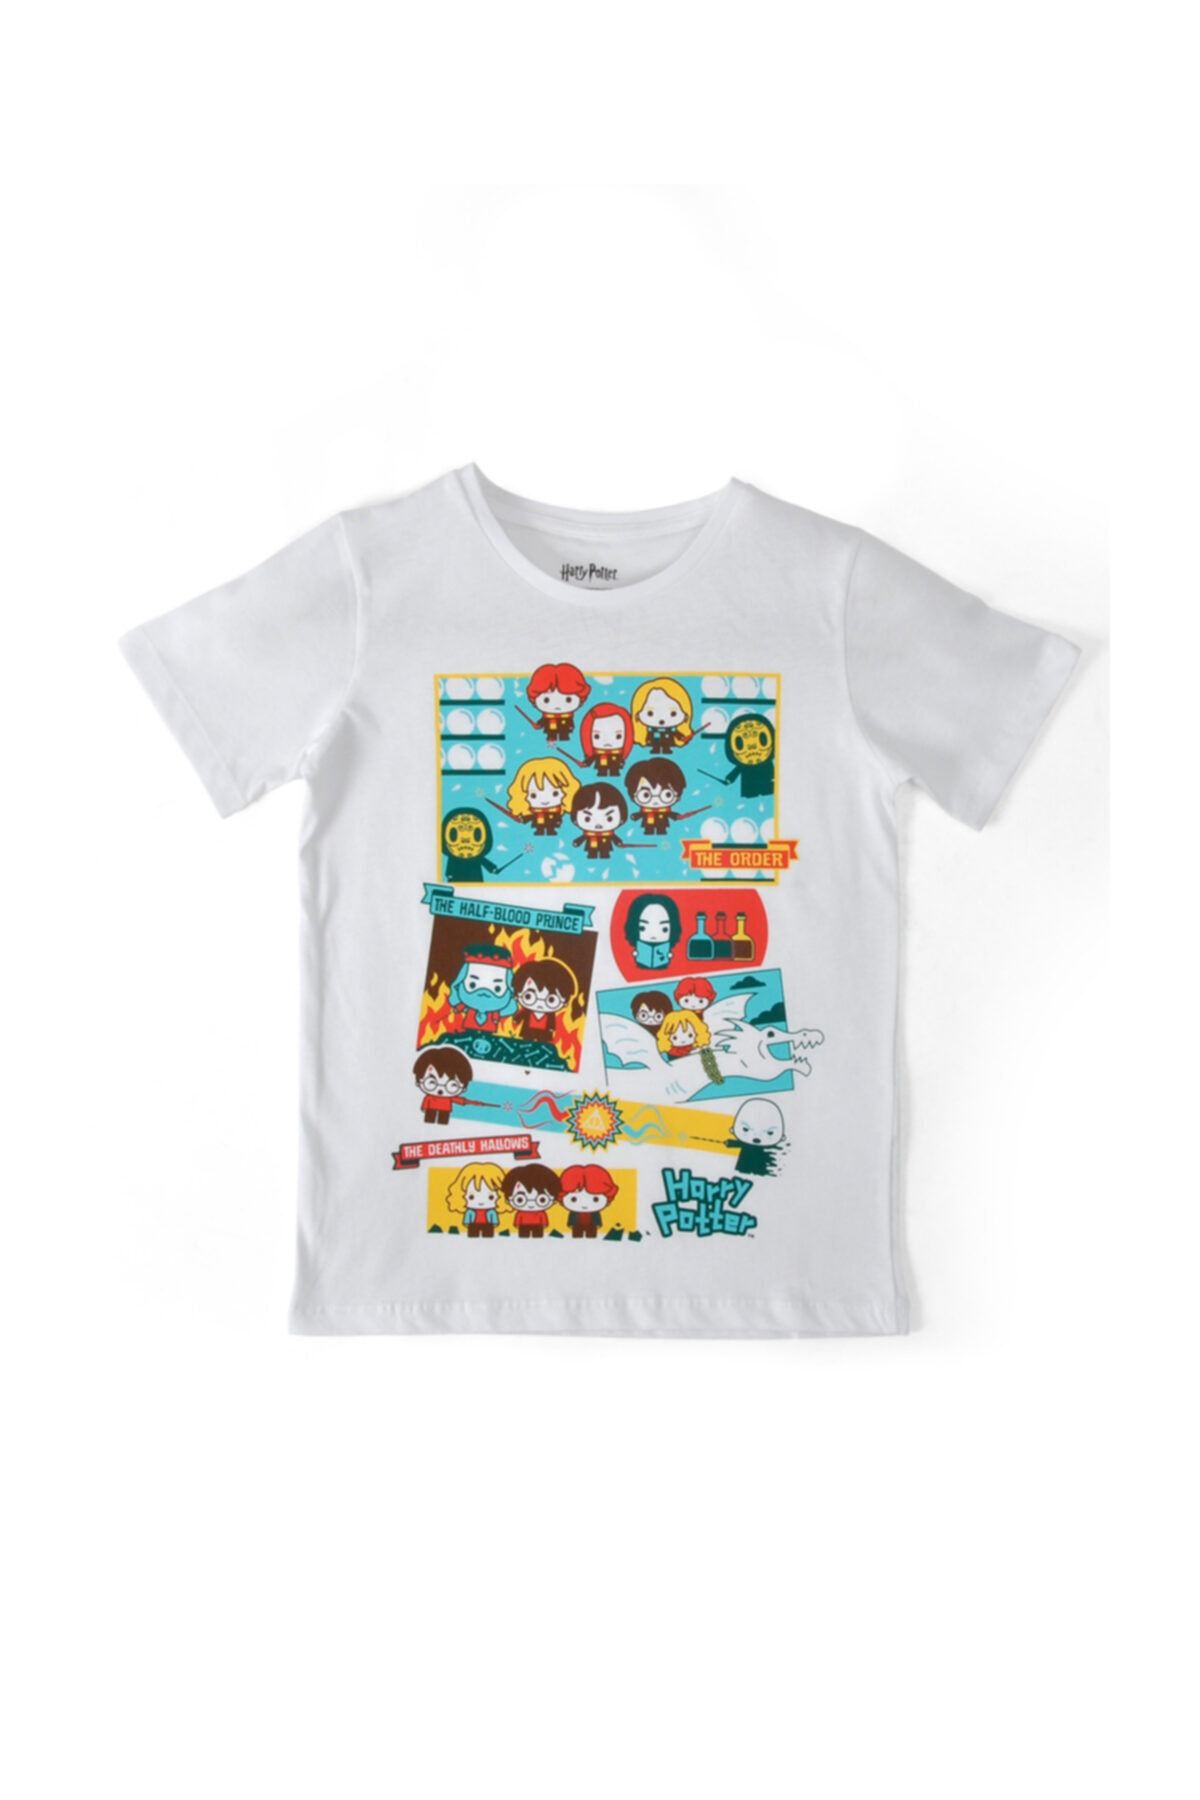 Dogo Çocuk Vegan Beyaz T-shirt - Sweet Hubbub - Harry Potter Tasarım